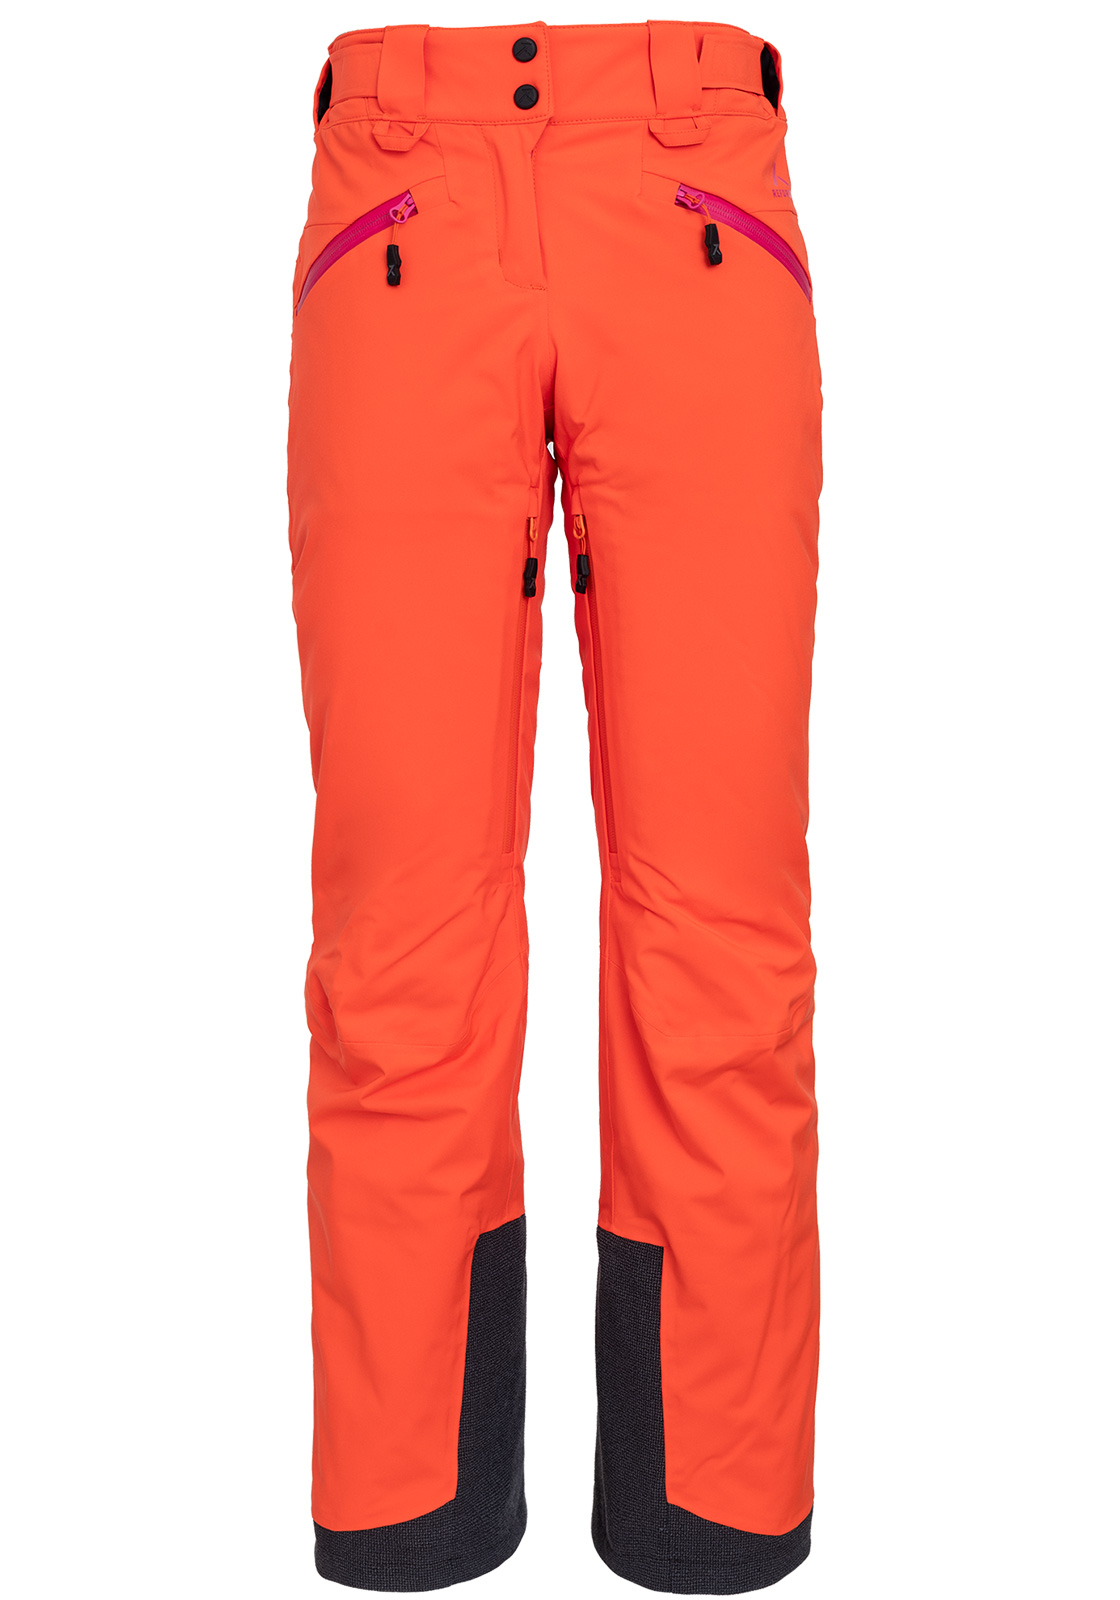 Pantalón de ski mujer-buen descuento en Aliexpress